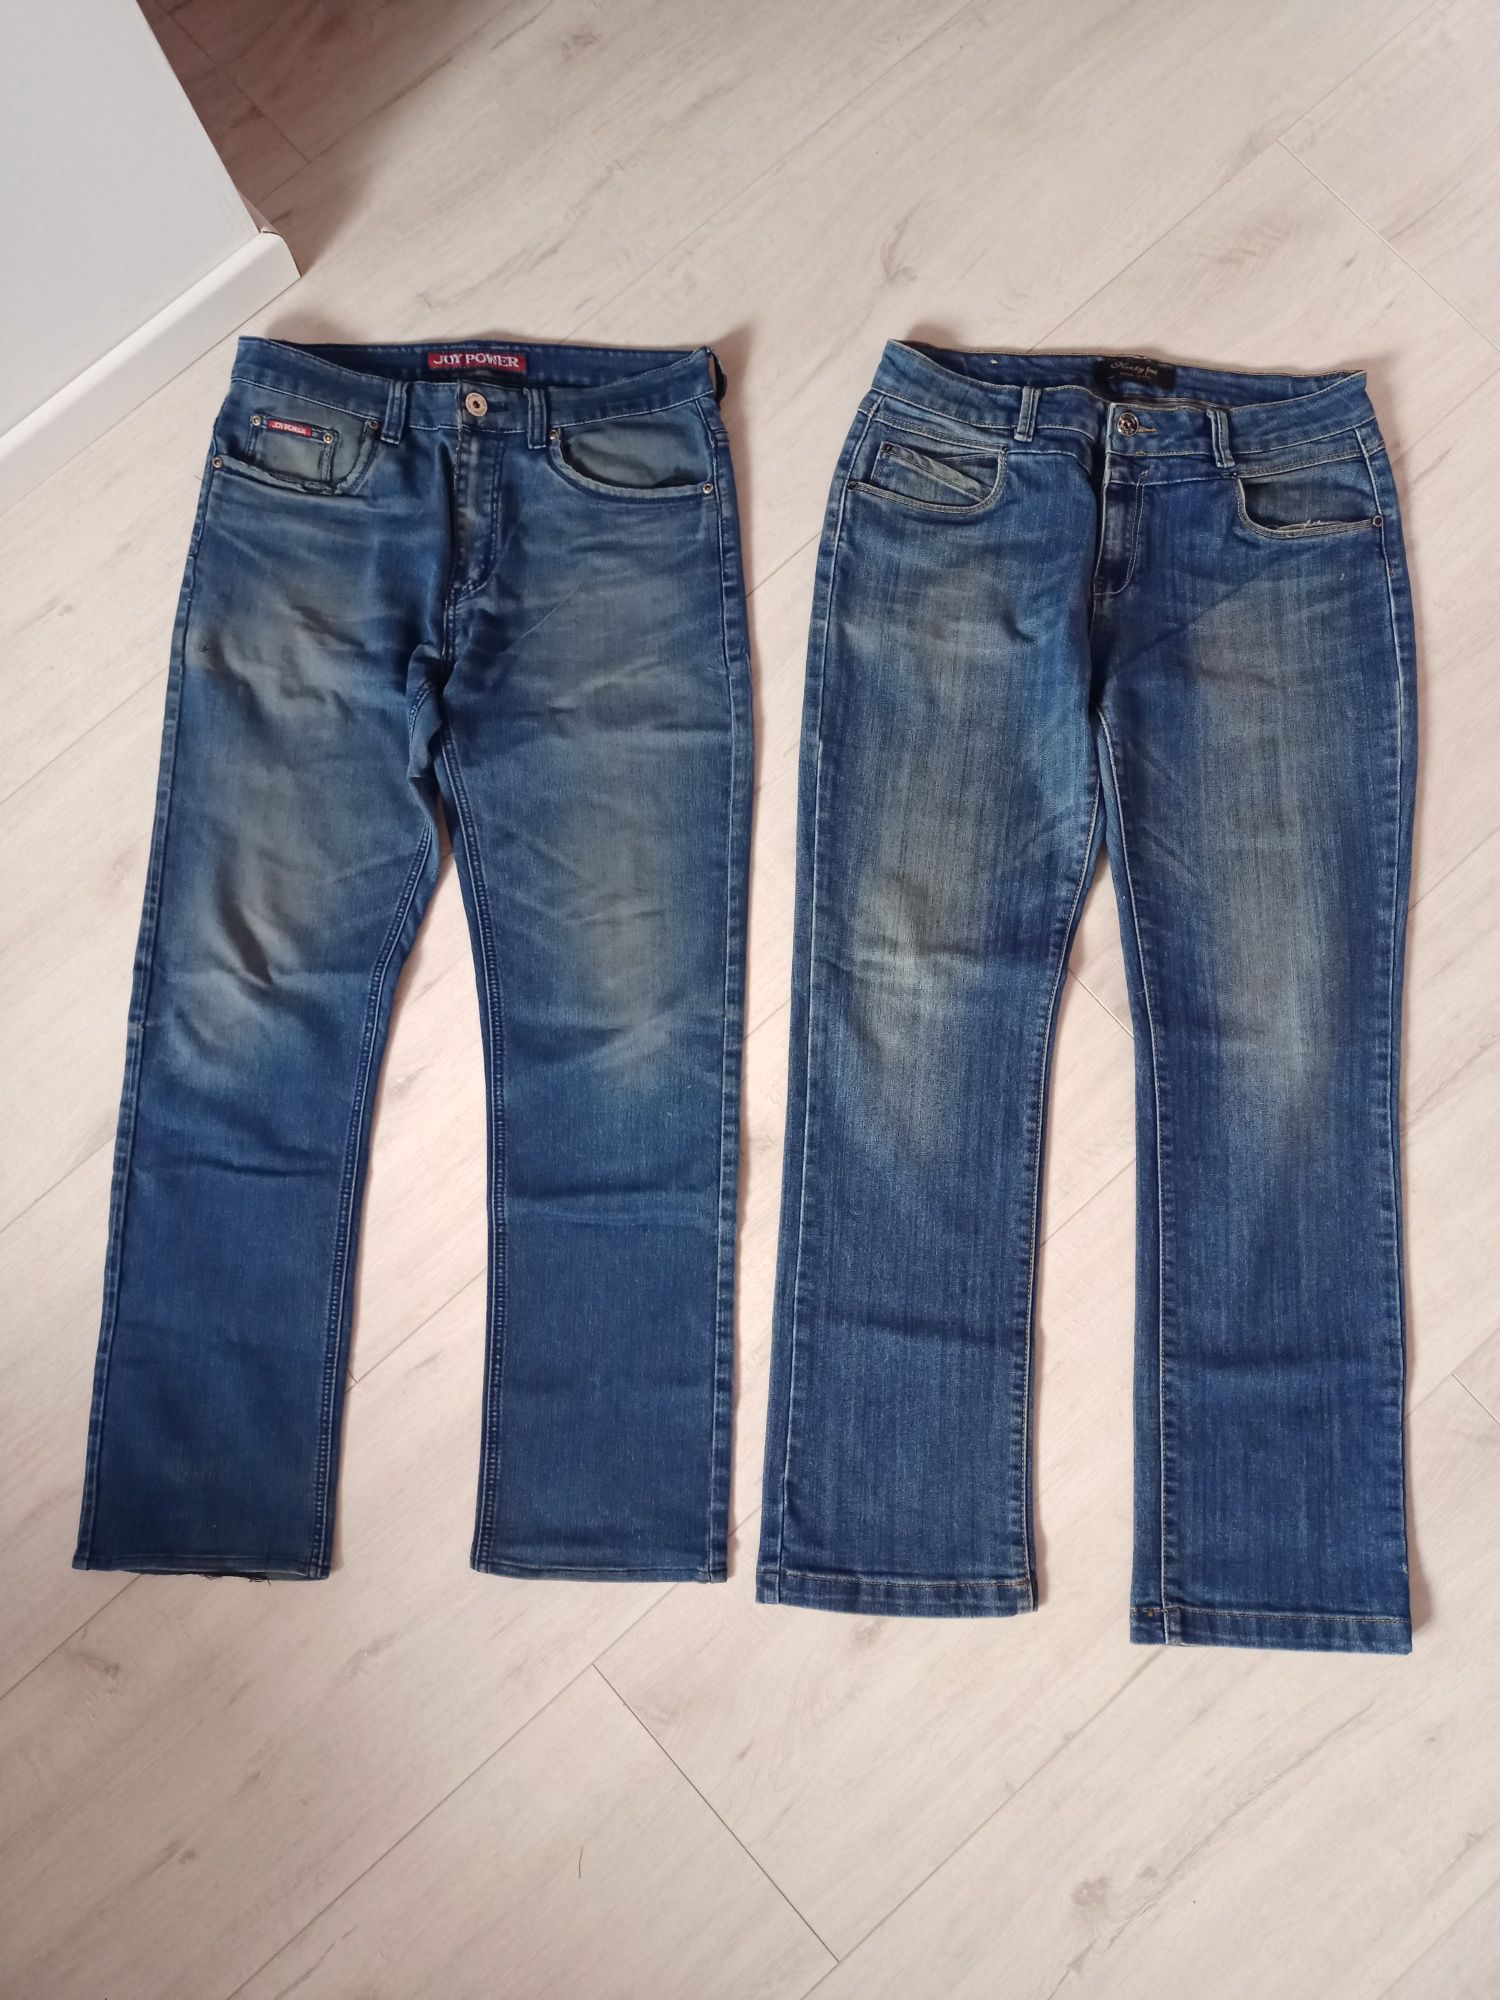 Spodnie męskie M L W34 32 niebieskie czarne bawełniane duży zestaw pak